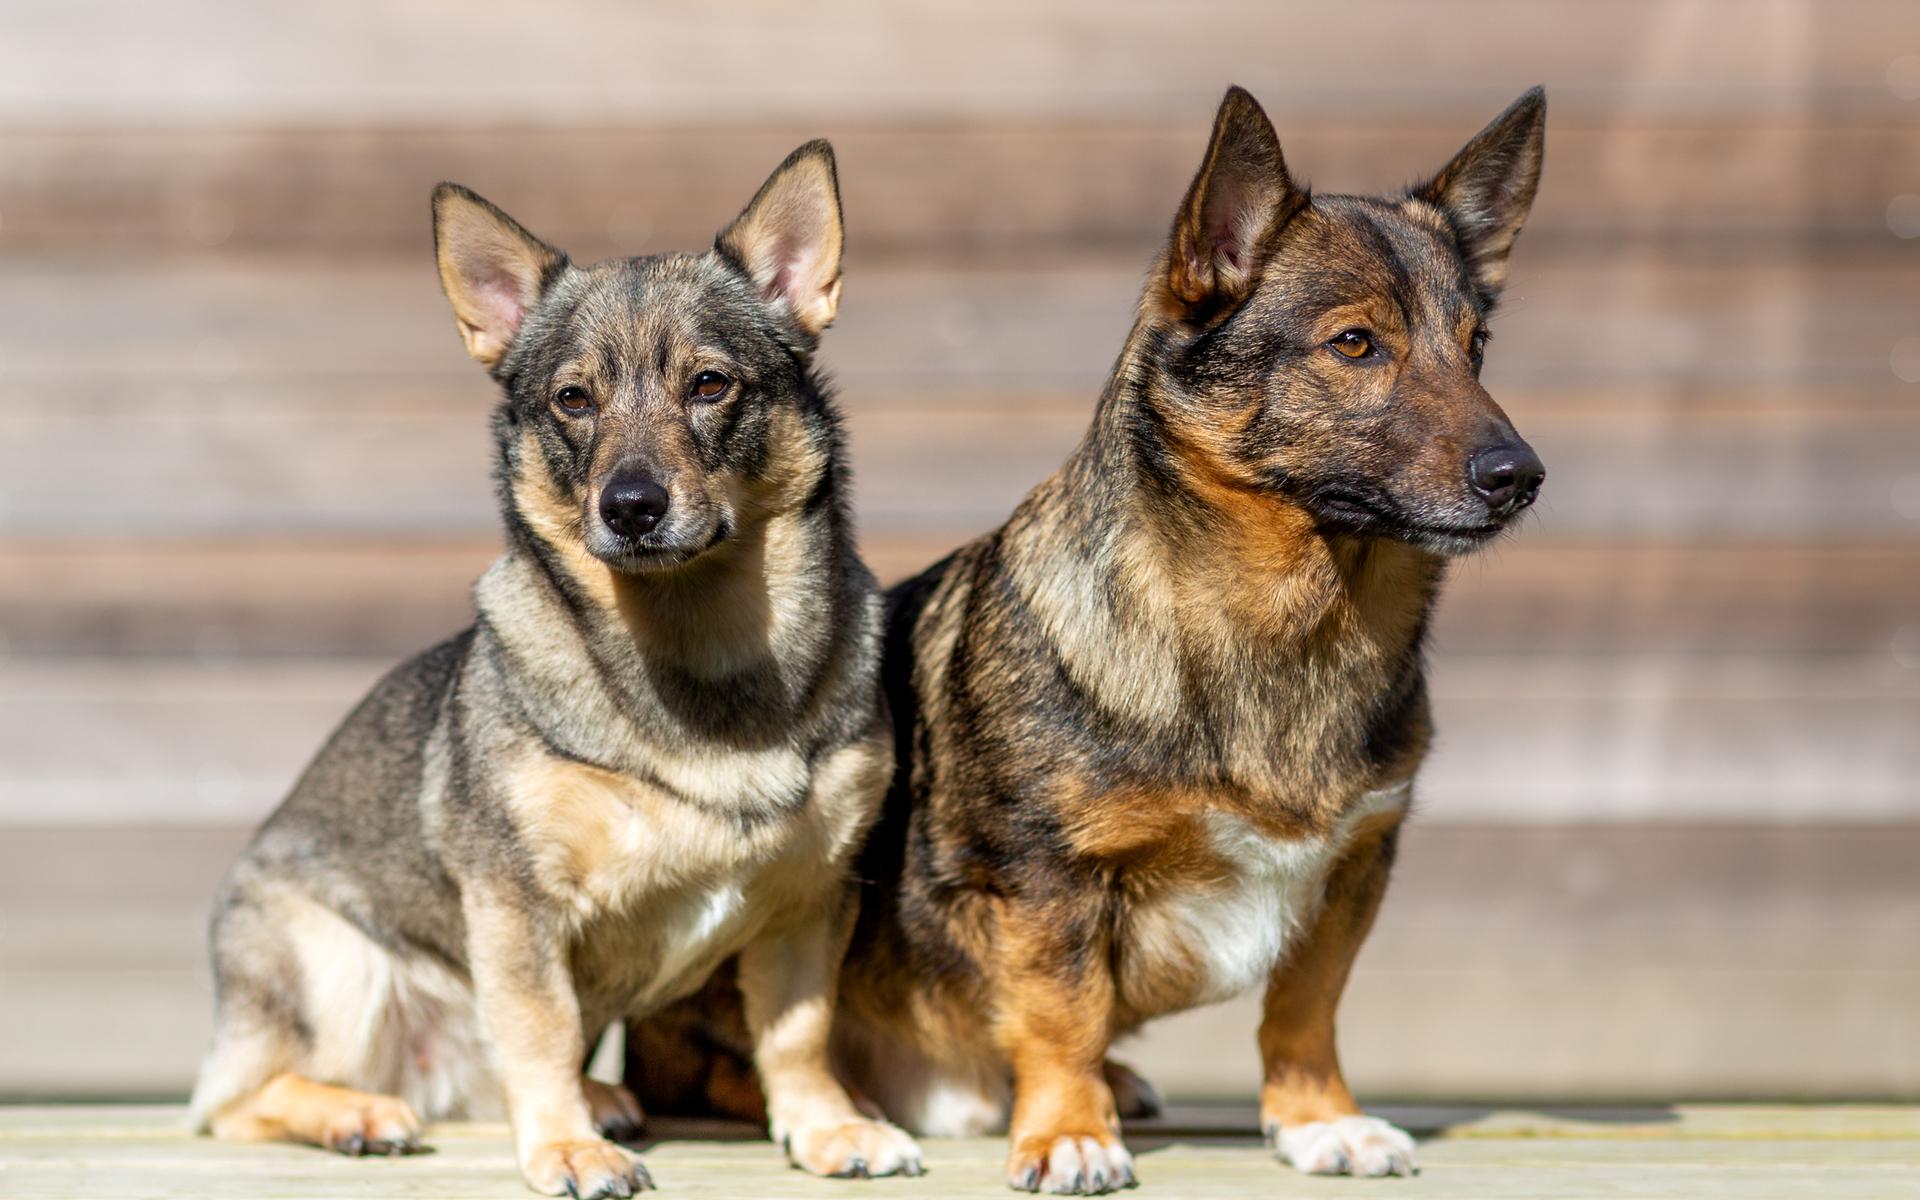 Athos och Fanny är av rasen västgötaspets och är två mångsidiga hundar som roar sin omgivning, de kommer från västkusten.